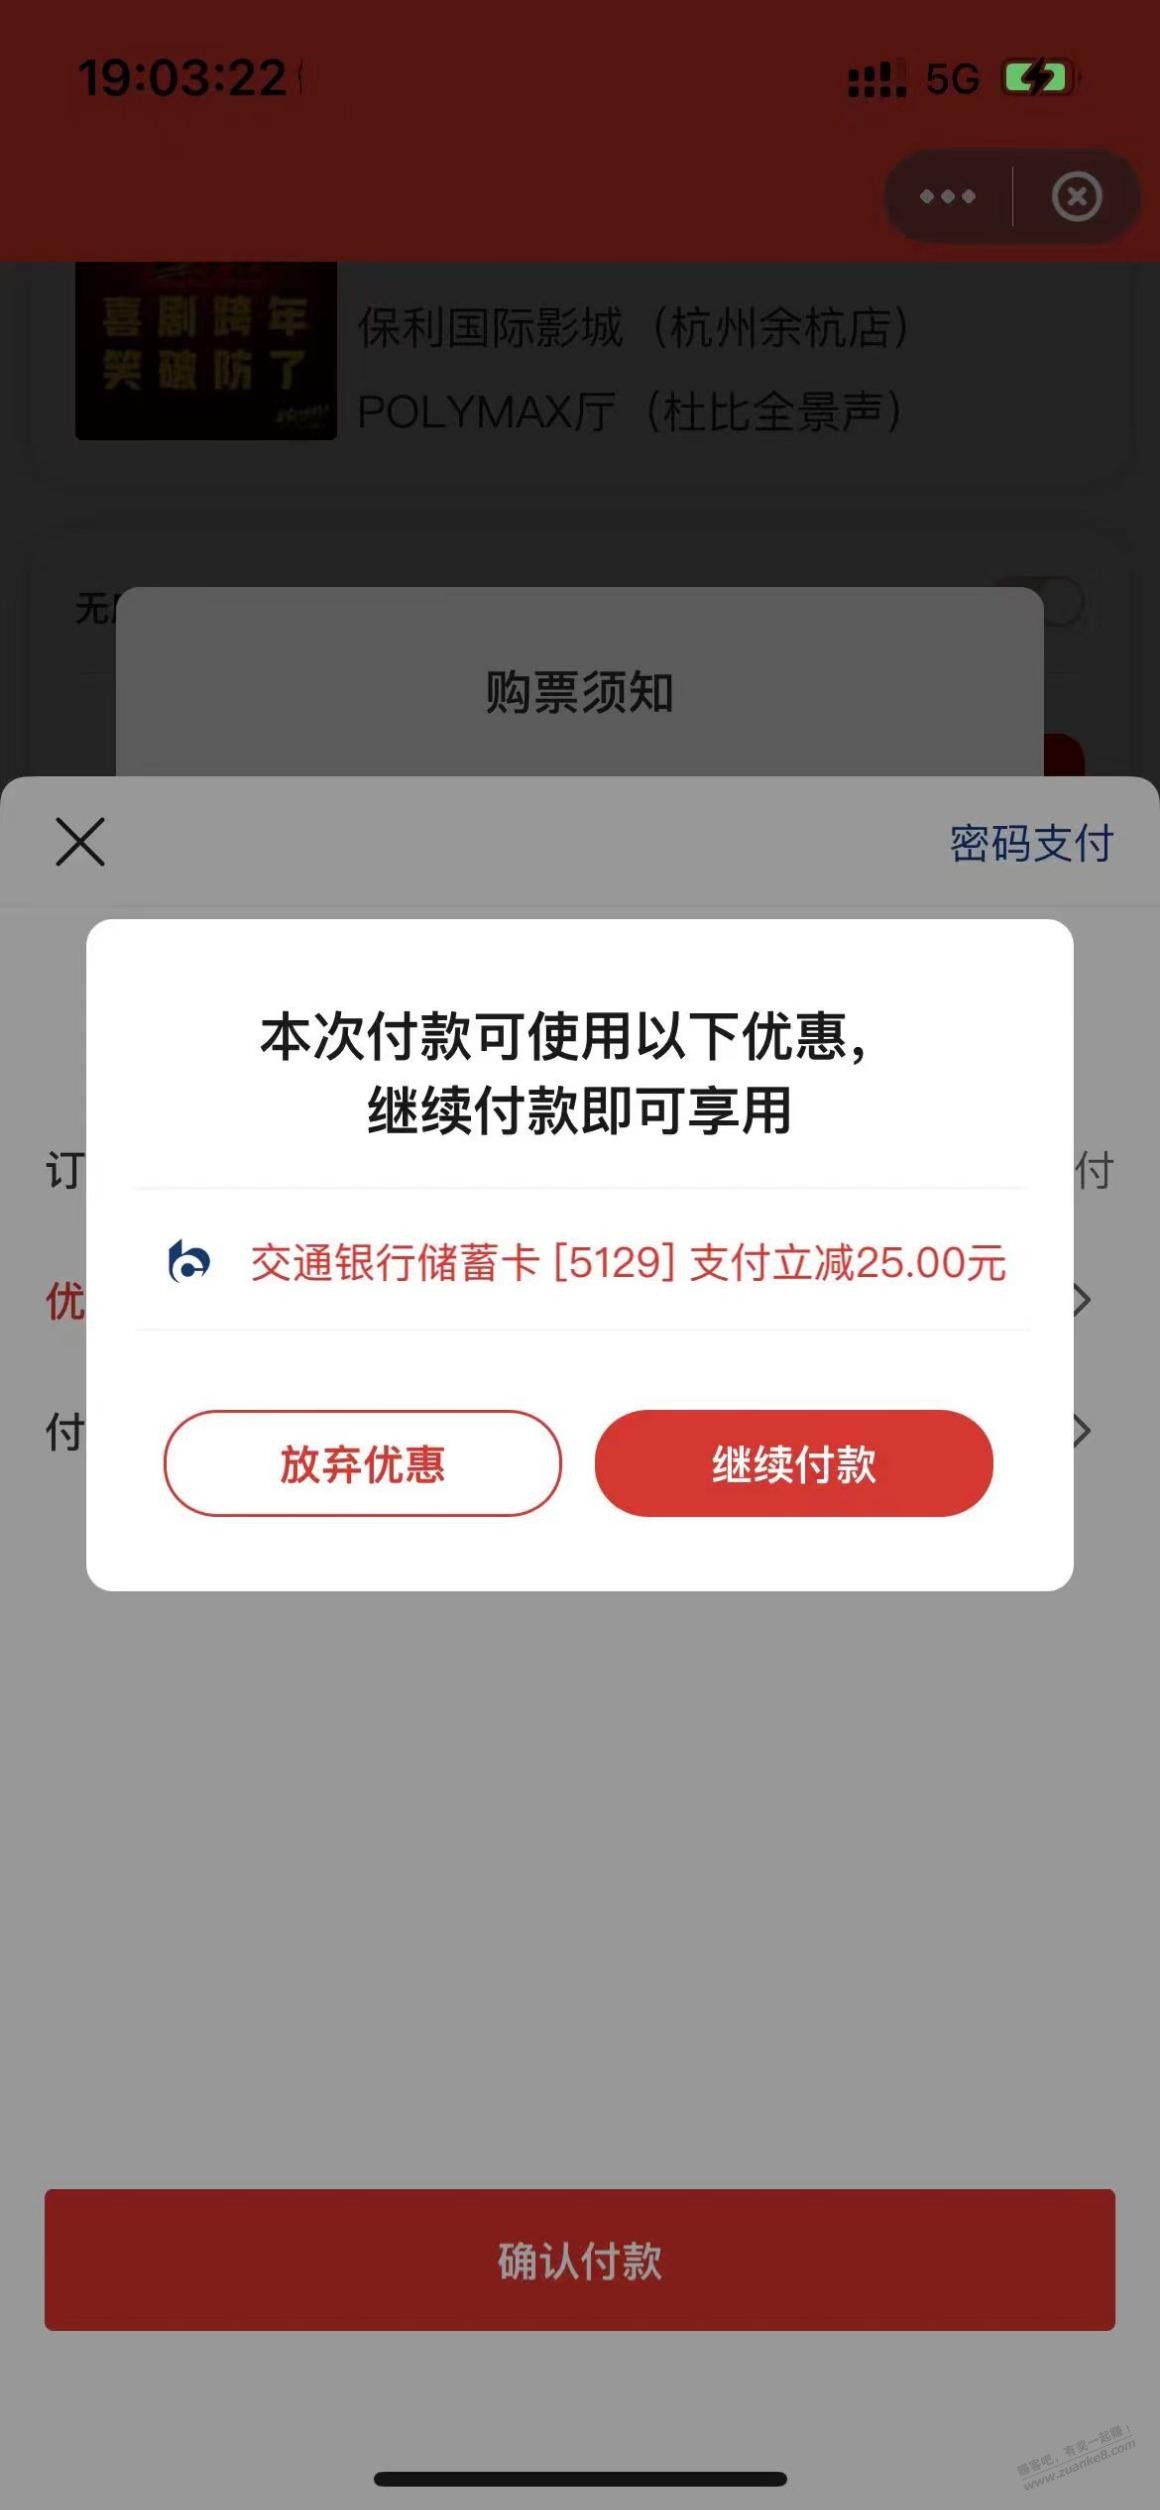 交通cxk-bug影票立减-惠小助(52huixz.com)